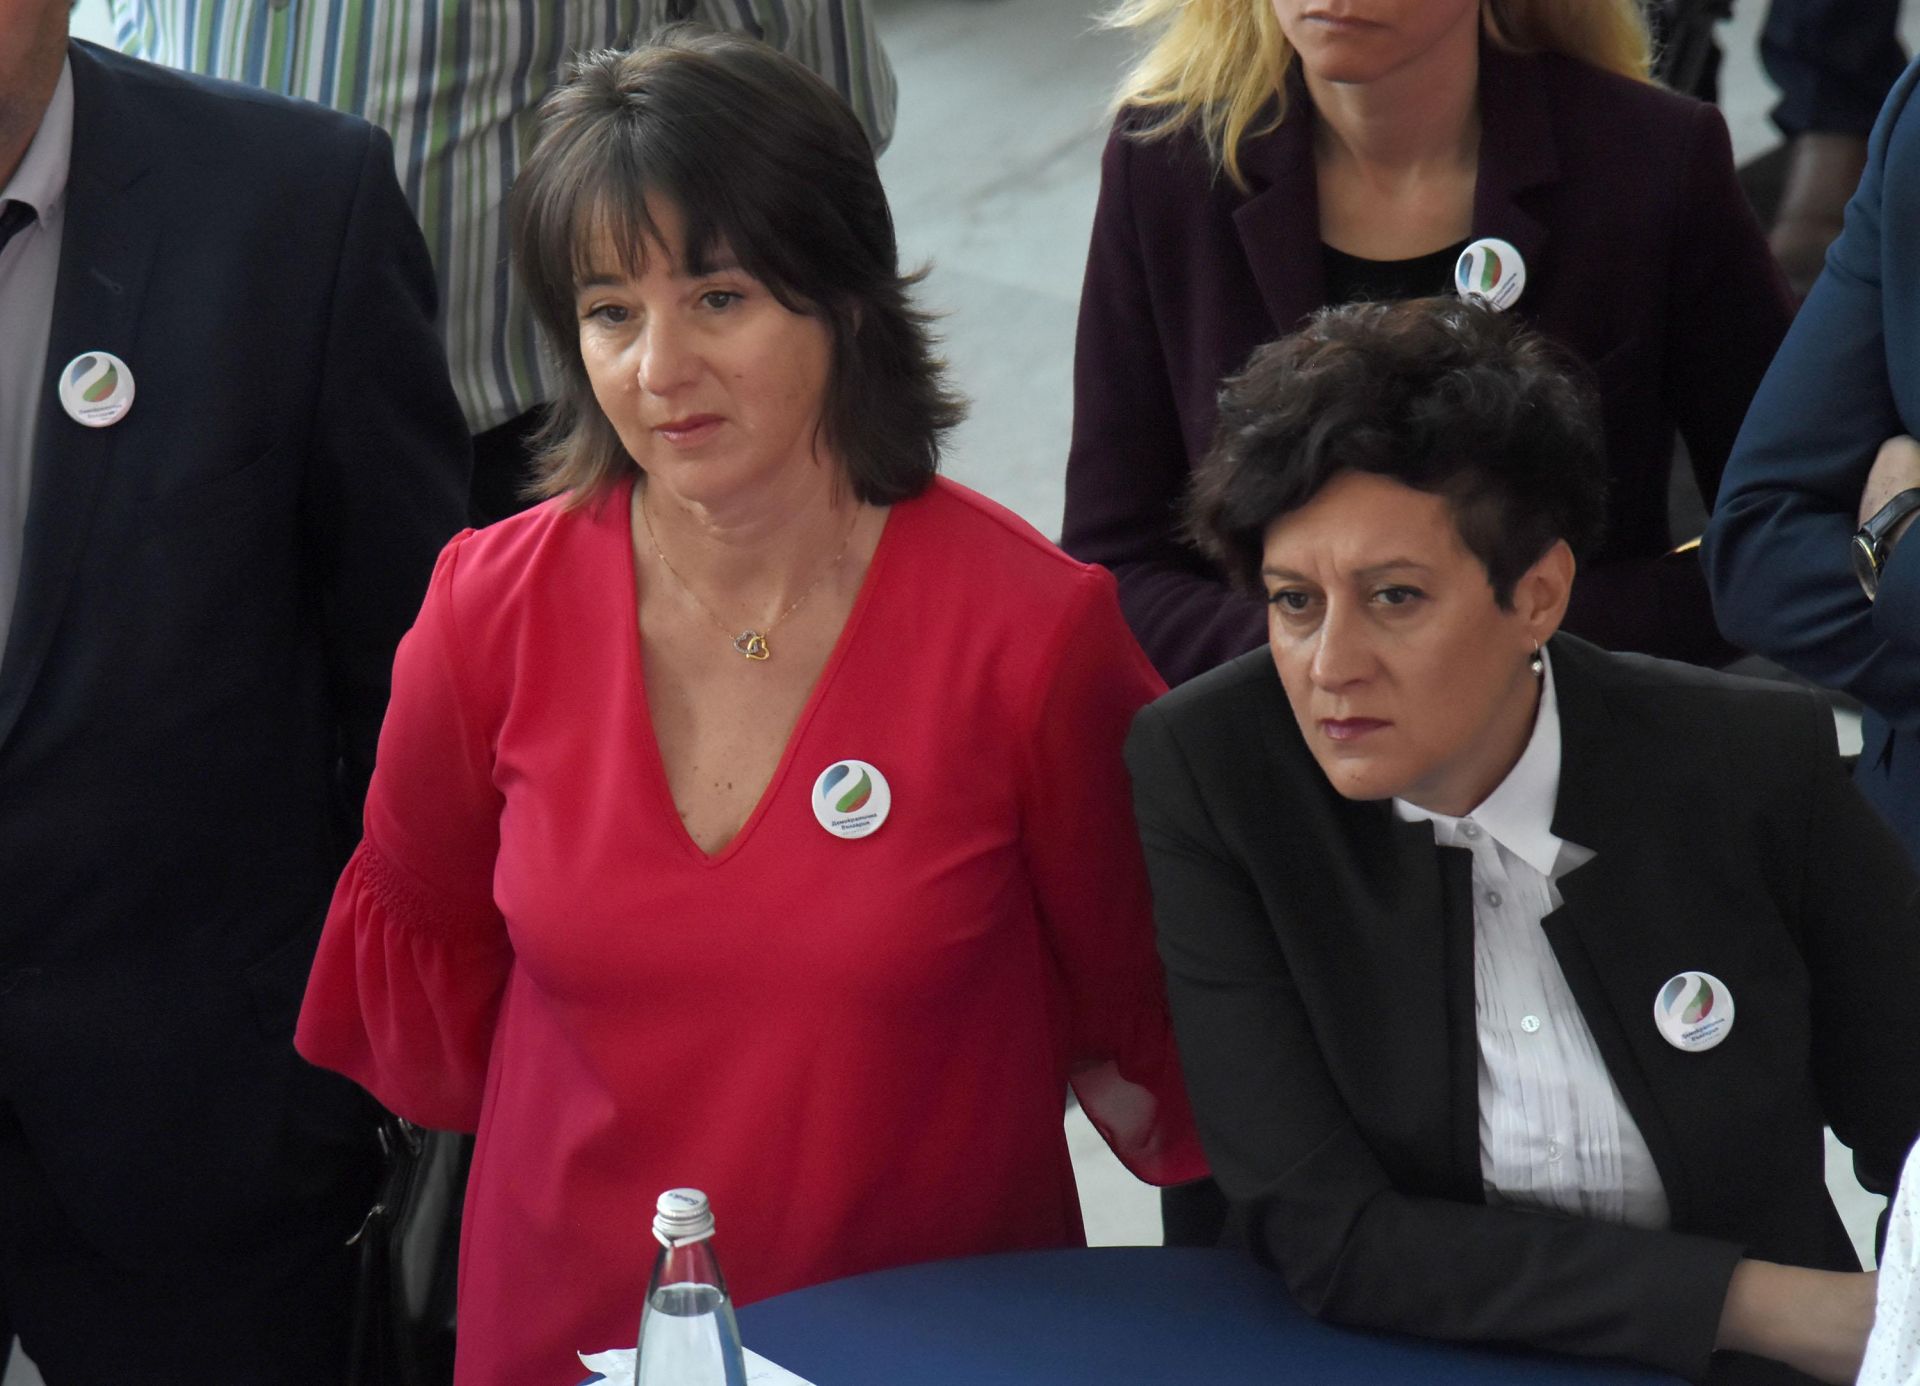 12 април 2018 г. - Мануела Малеева (вляво) с Антоанета Цонева по време на учредяването на коалицията "Демократична България"